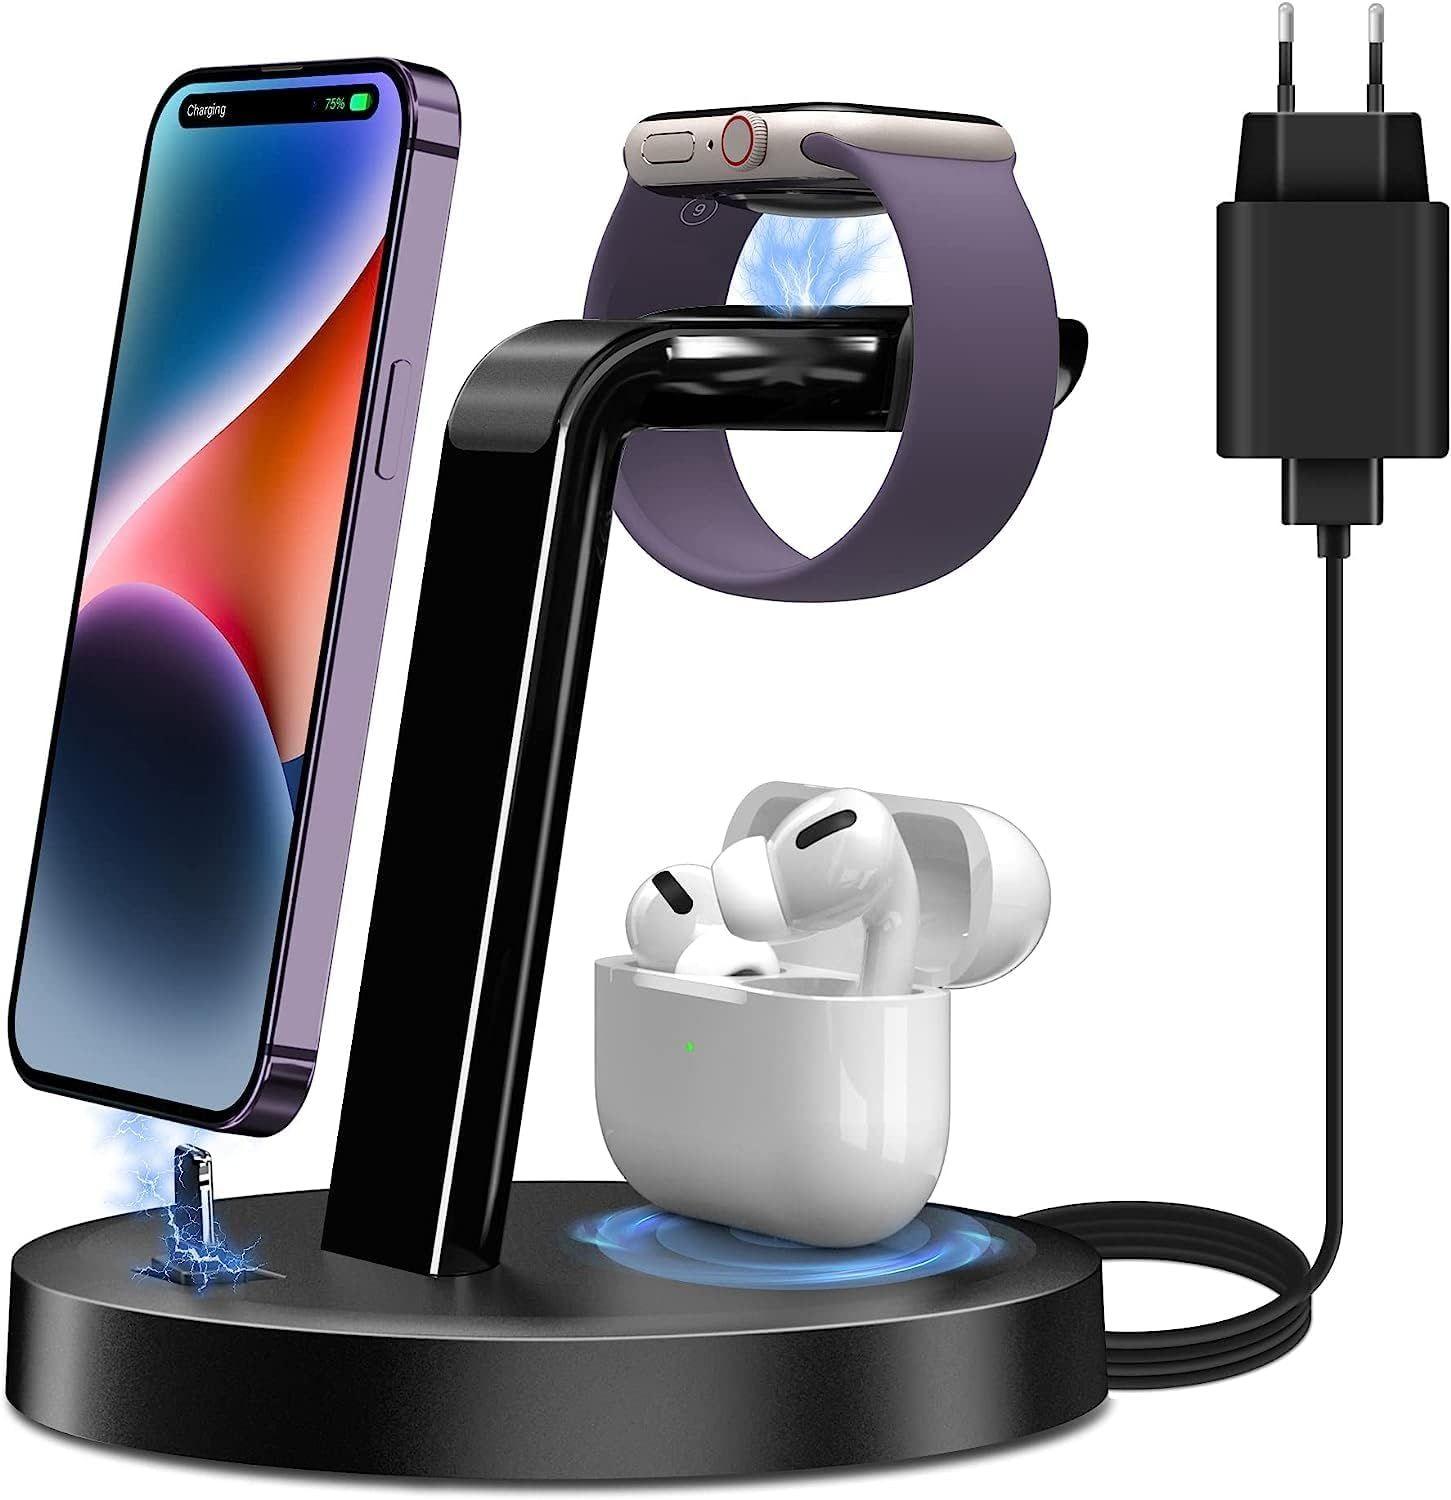 Chargeur induction pour Apple iPhone 8 Station de Charge sans fil